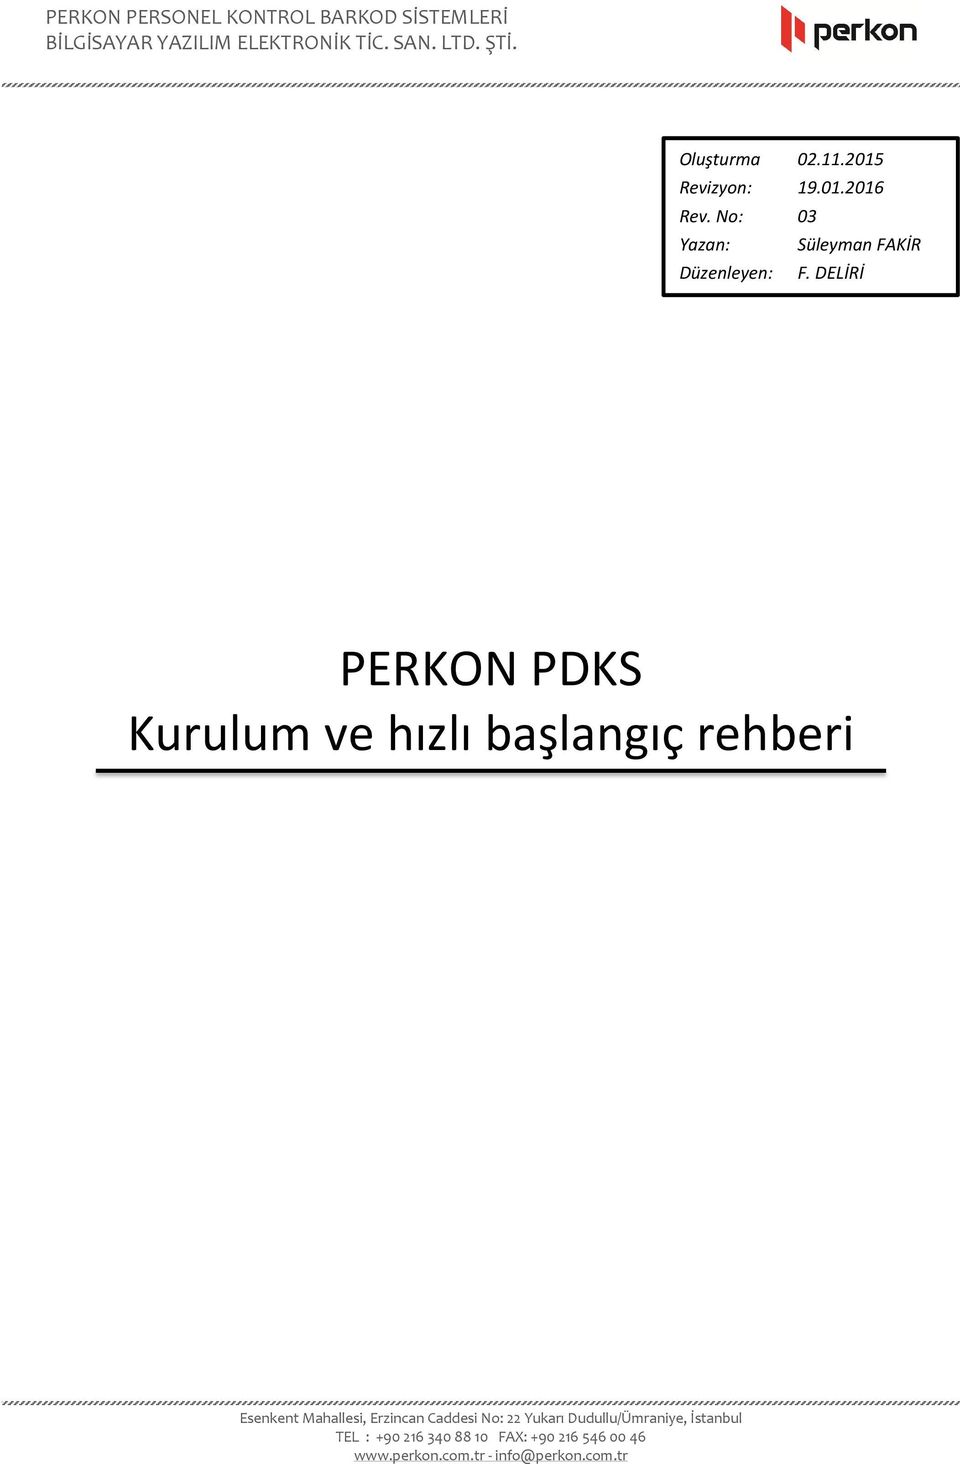 PERKON PDKS Kurulum ve hızlı başlangıç rehberi - PDF Free Download